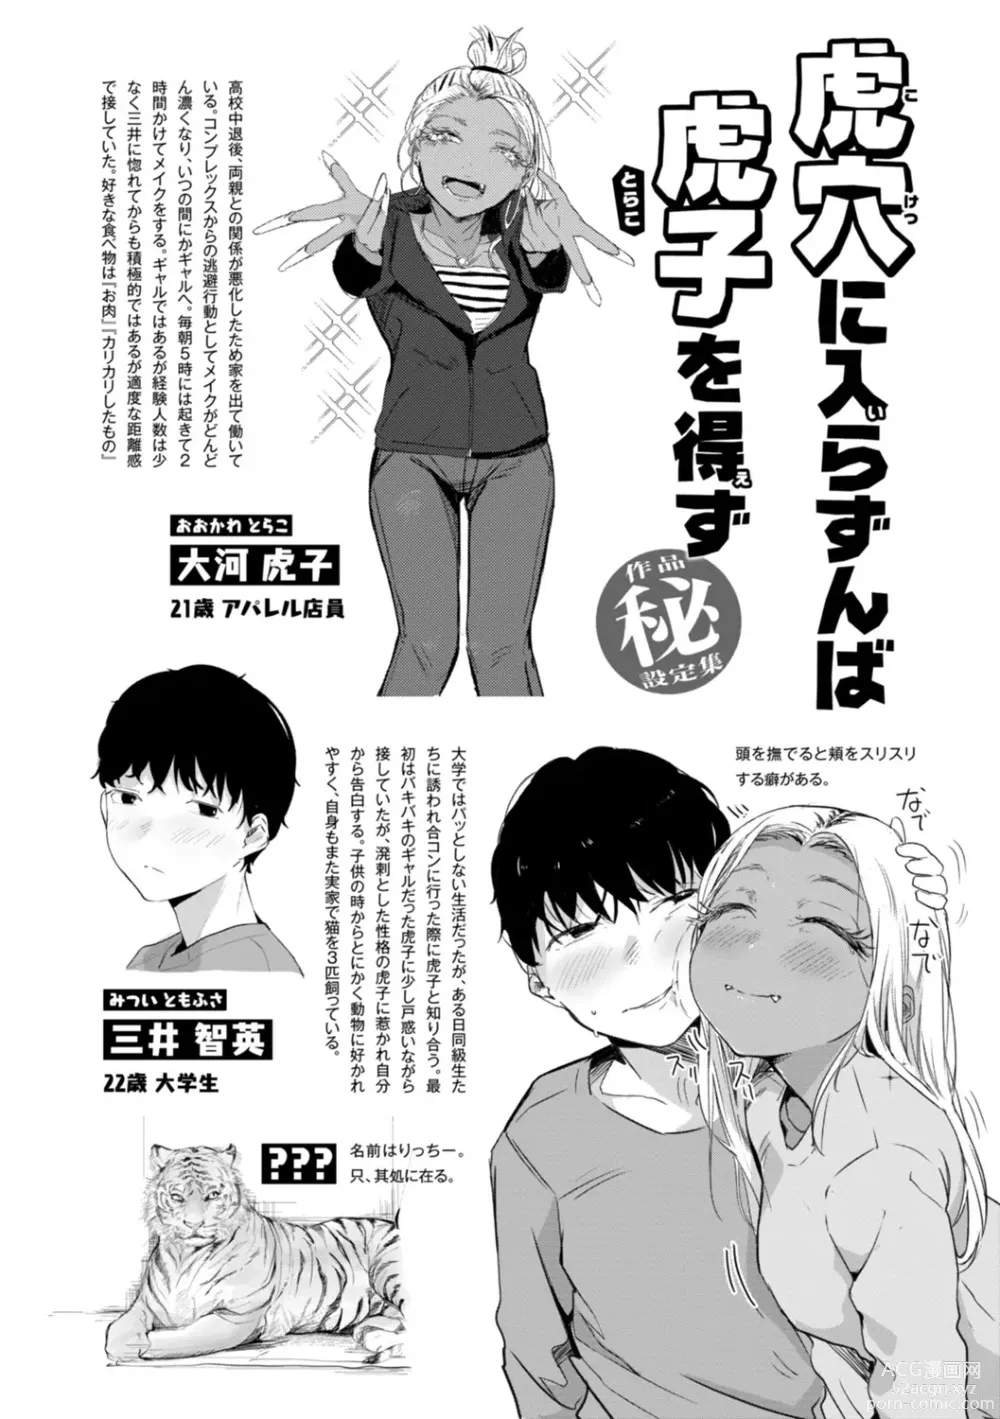 Page 170 of manga Kiteretsu Porno Zenshuu